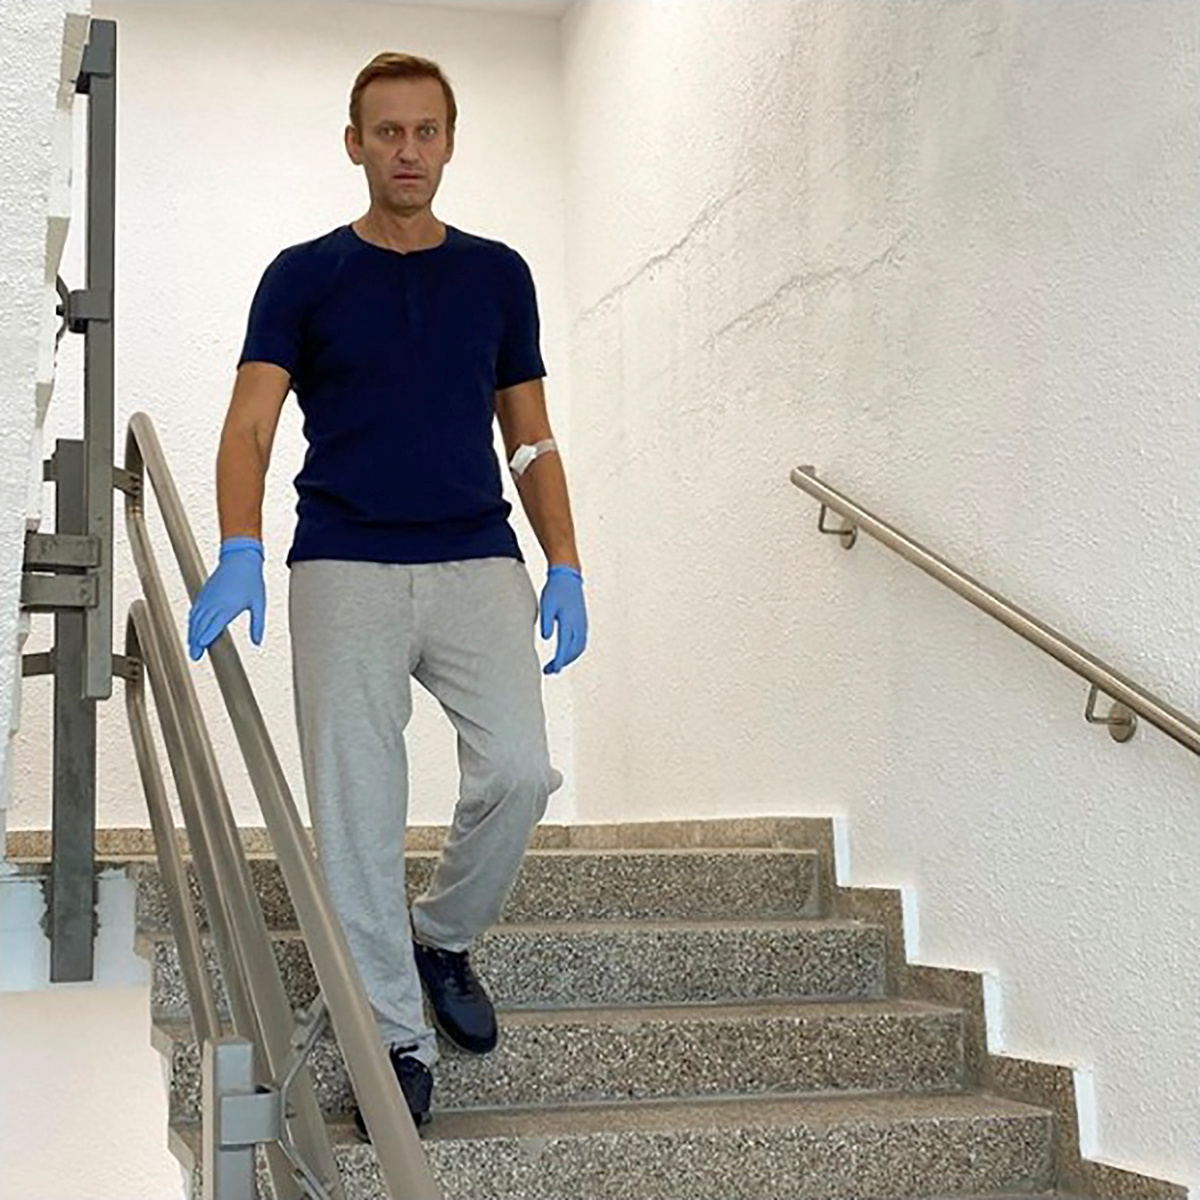 L'opposant russe Alexeï Navalny publie une photo et dit que sa santé s'améliore